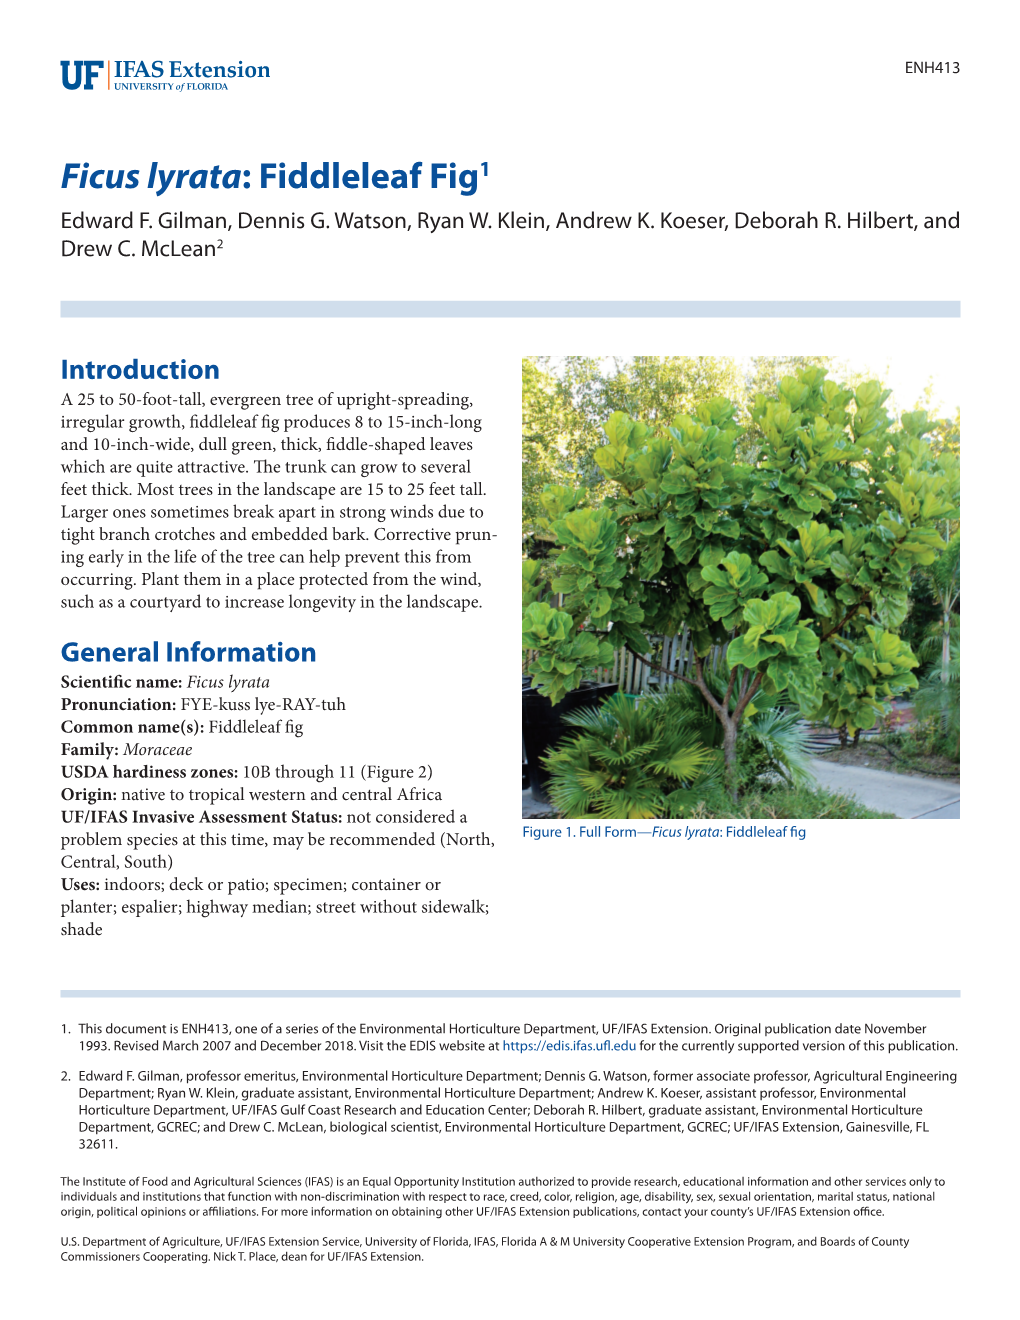 Ficus Lyrata: Fiddleleaf Fig1 Edward F